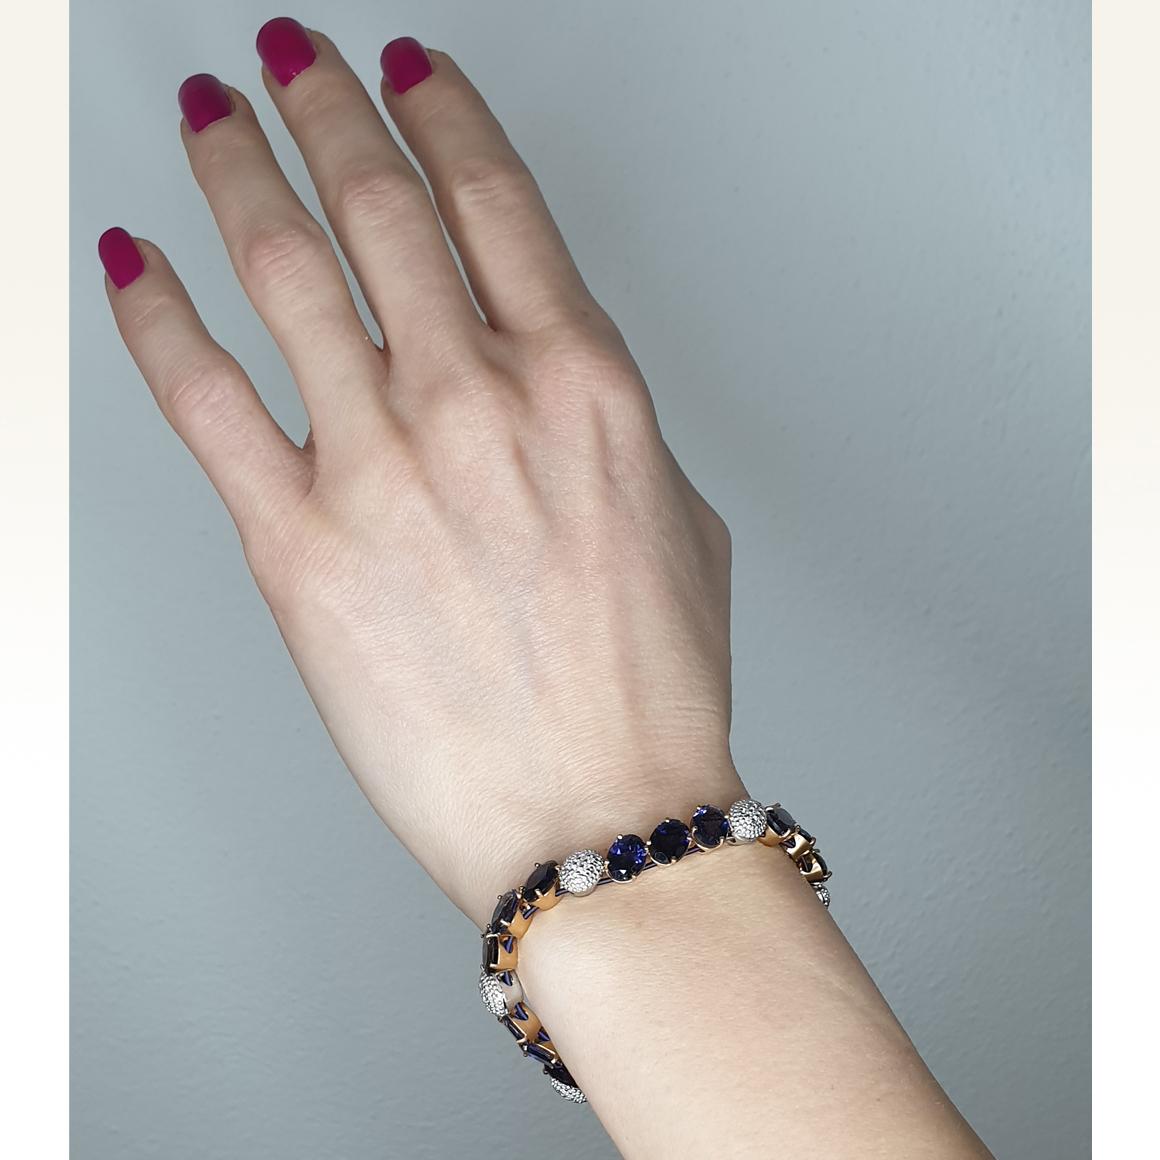 Trandy, Mode und Design für dieses erstaunliche Armband mit spezieller Titanfeder in Rosé- und Weißgold 18kt.
 Dieses Stück ist leicht zu tragen. Bei jeder Gelegenheit können Sie dieses Armband tragen und sich wohl und trendy fühlen.
Die Titanfedern